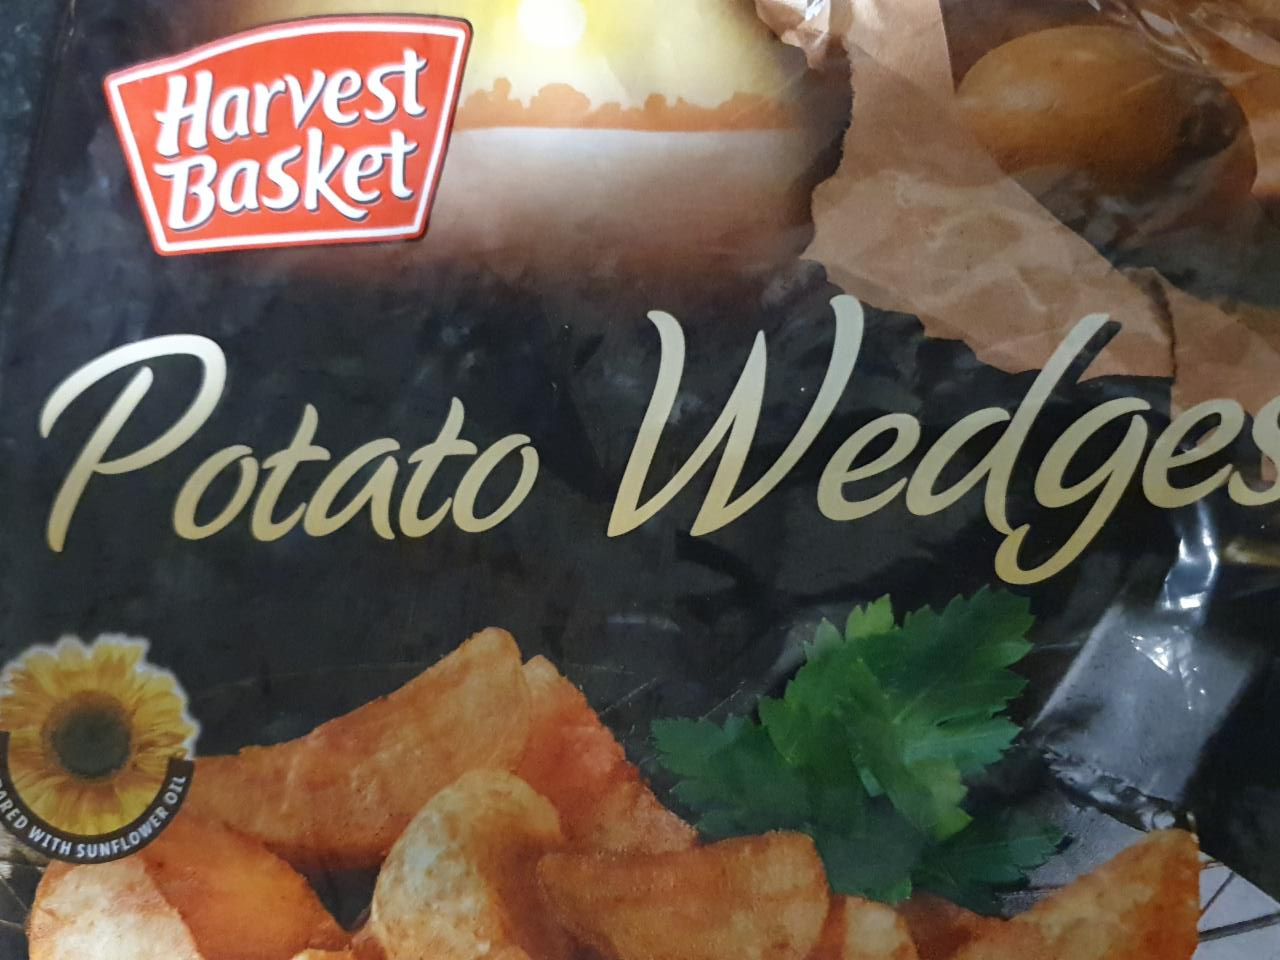 Fotografie - potato wedges Harvest Basket